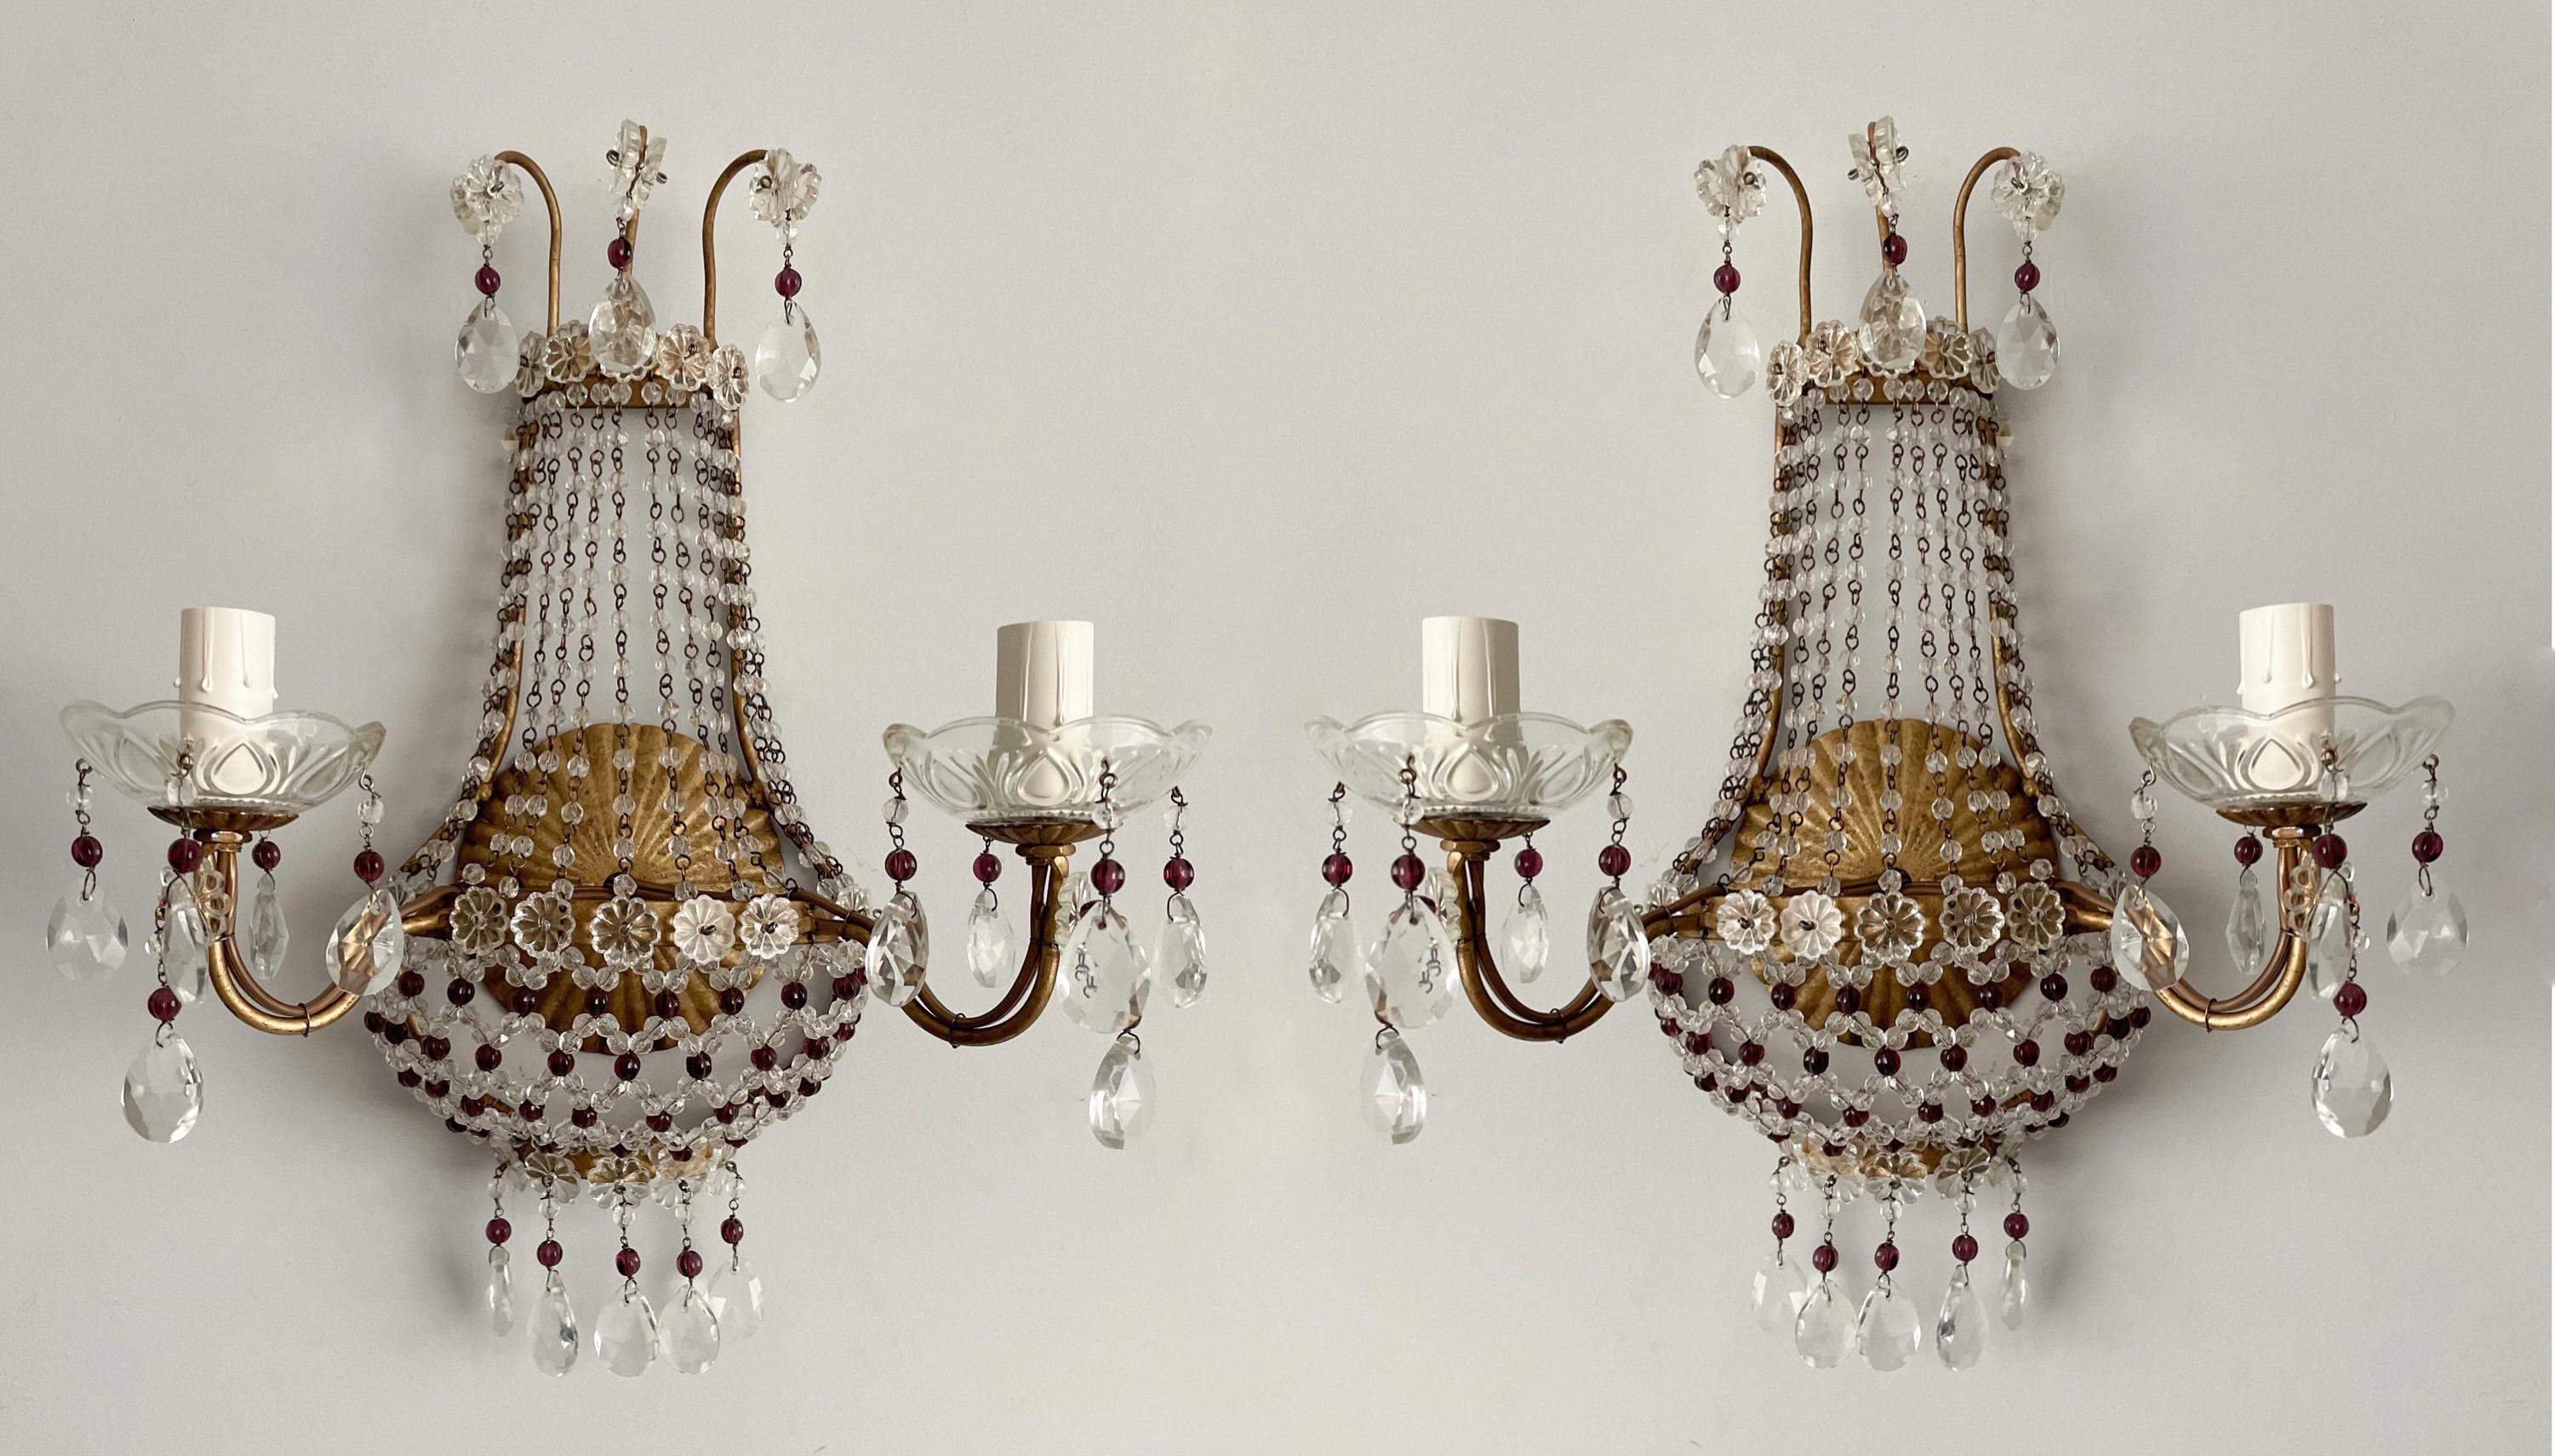 Exquisite, Paar italienische Vintage-Kristall Perlen Wandleuchter. 

Jede Leuchte besteht aus einem Rahmen aus vergoldetem Eisen, der mit klaren und amethystfarbenen Glasperlen verziert ist. 

Die Leuchter sind verkabelt und funktionstüchtig,